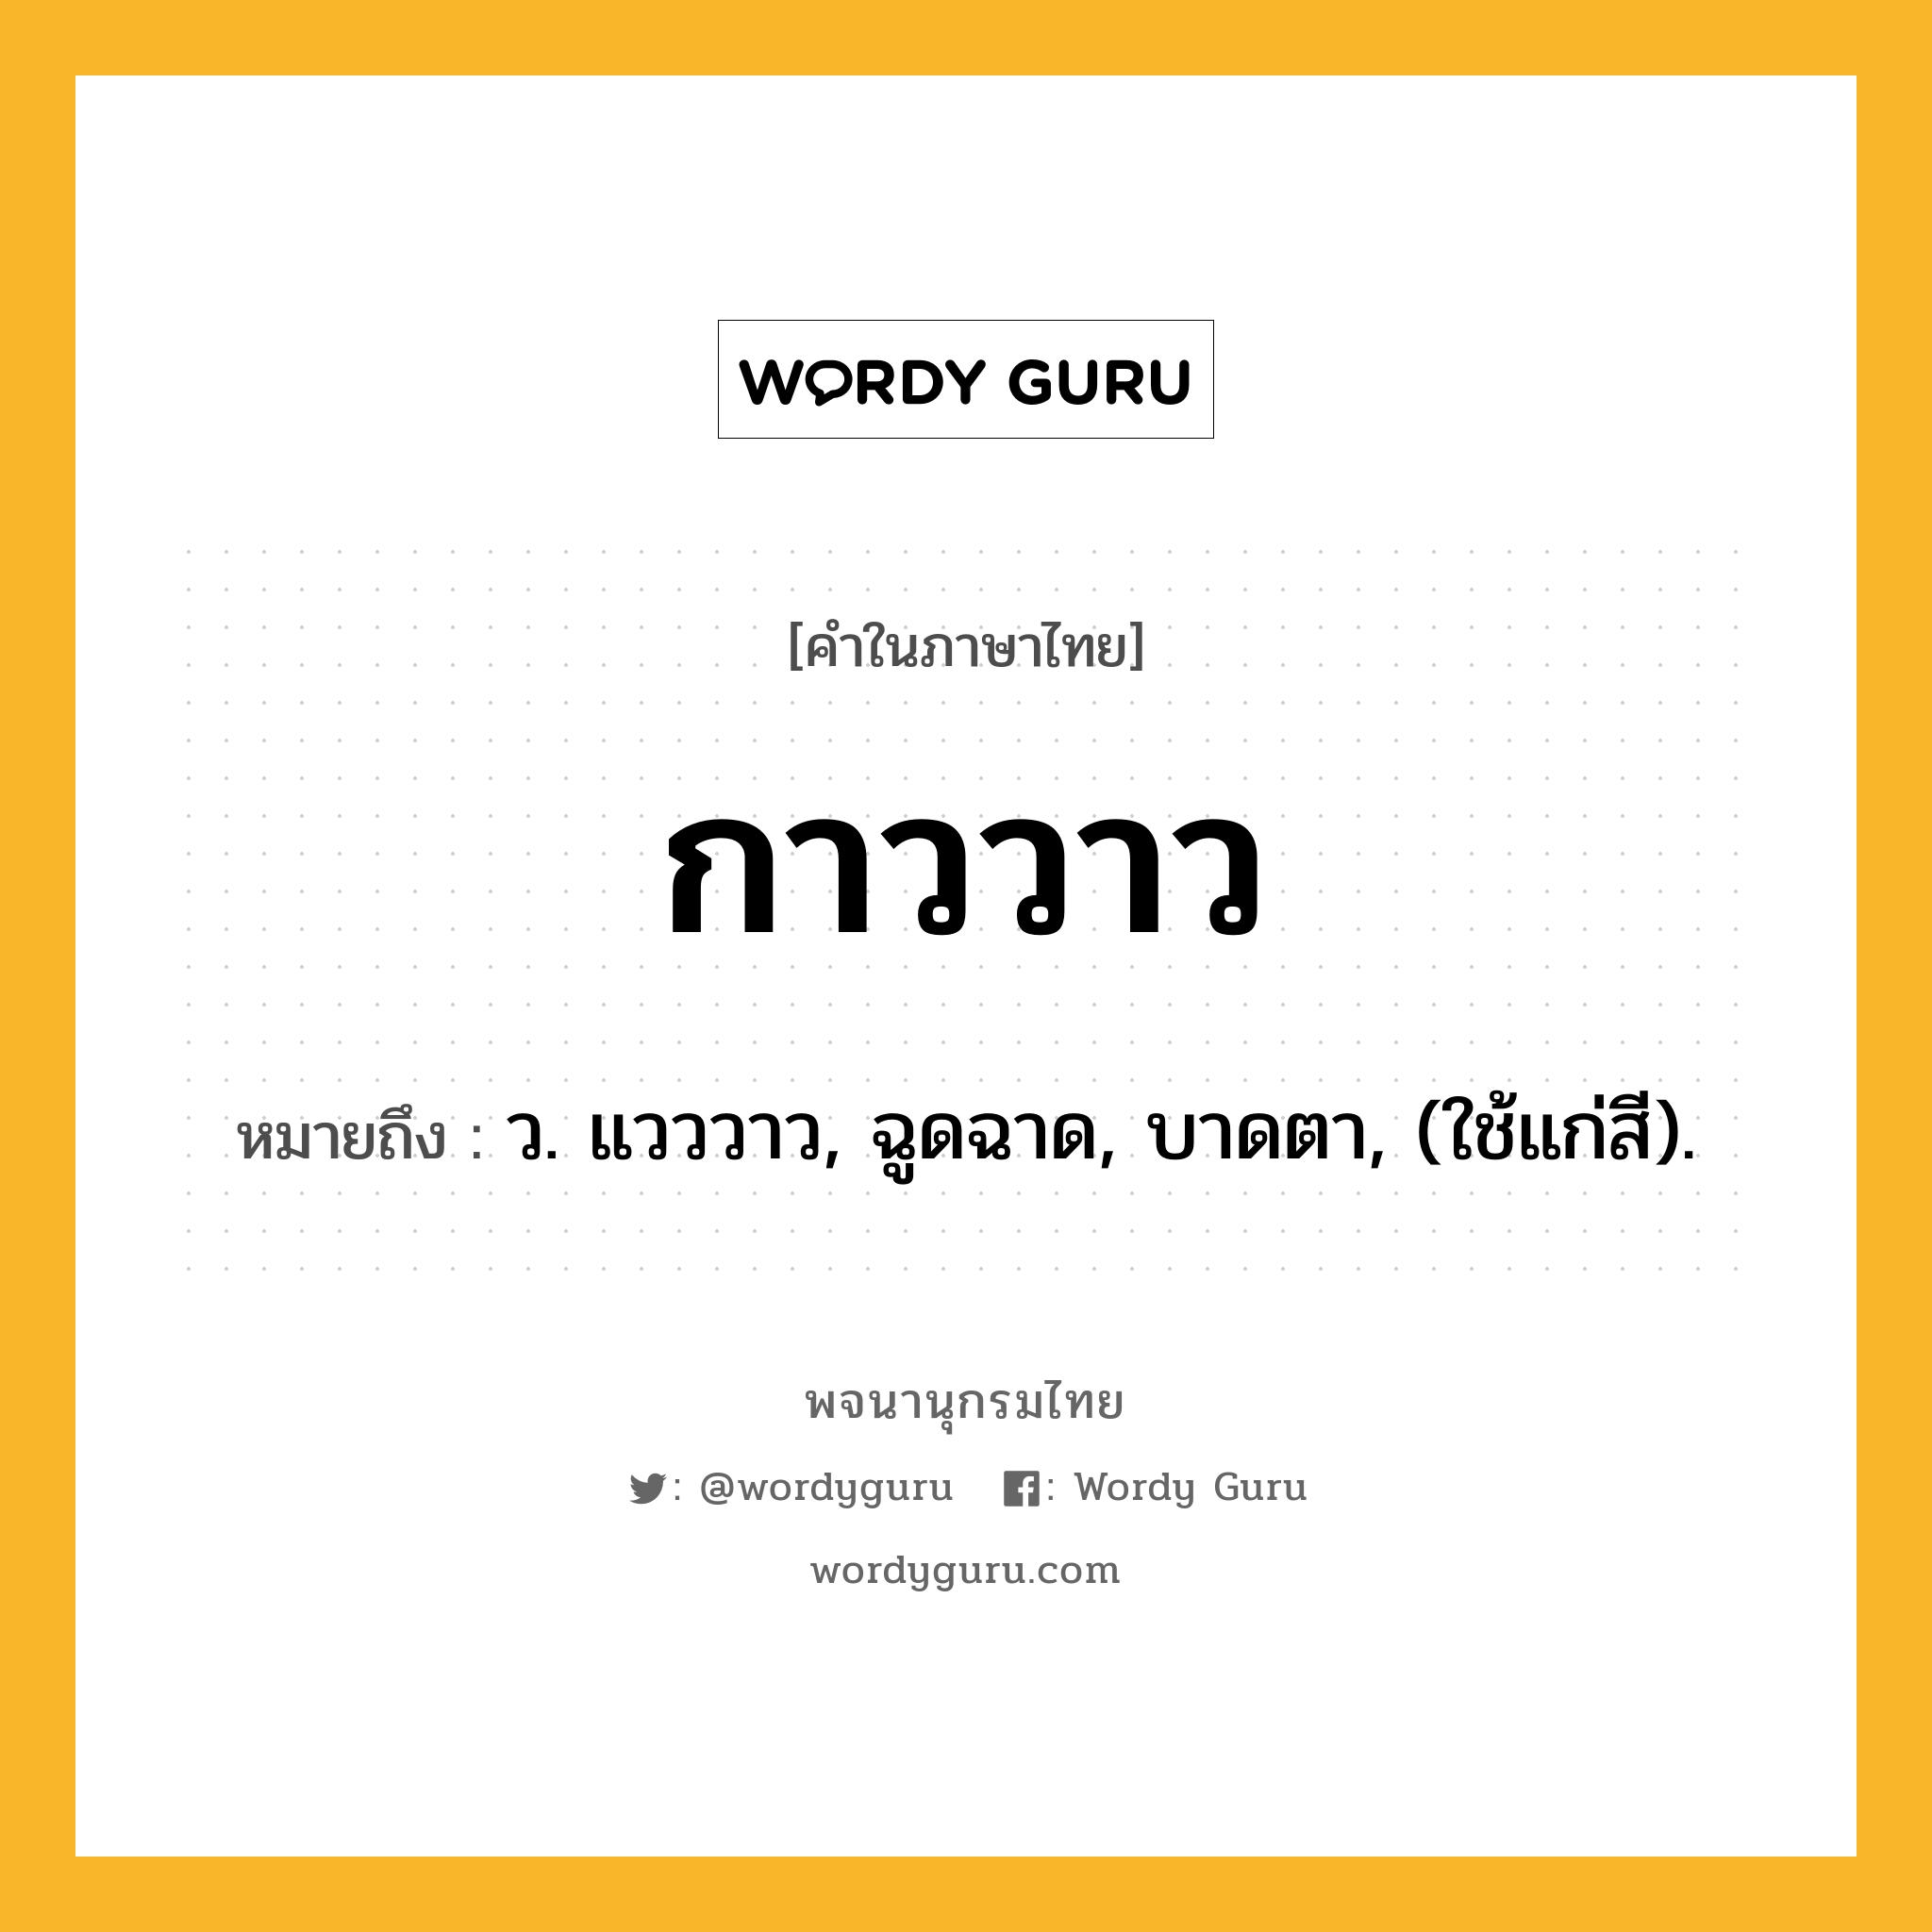 กาววาว หมายถึงอะไร?, คำในภาษาไทย กาววาว หมายถึง ว. แวววาว, ฉูดฉาด, บาดตา, (ใช้แก่สี).